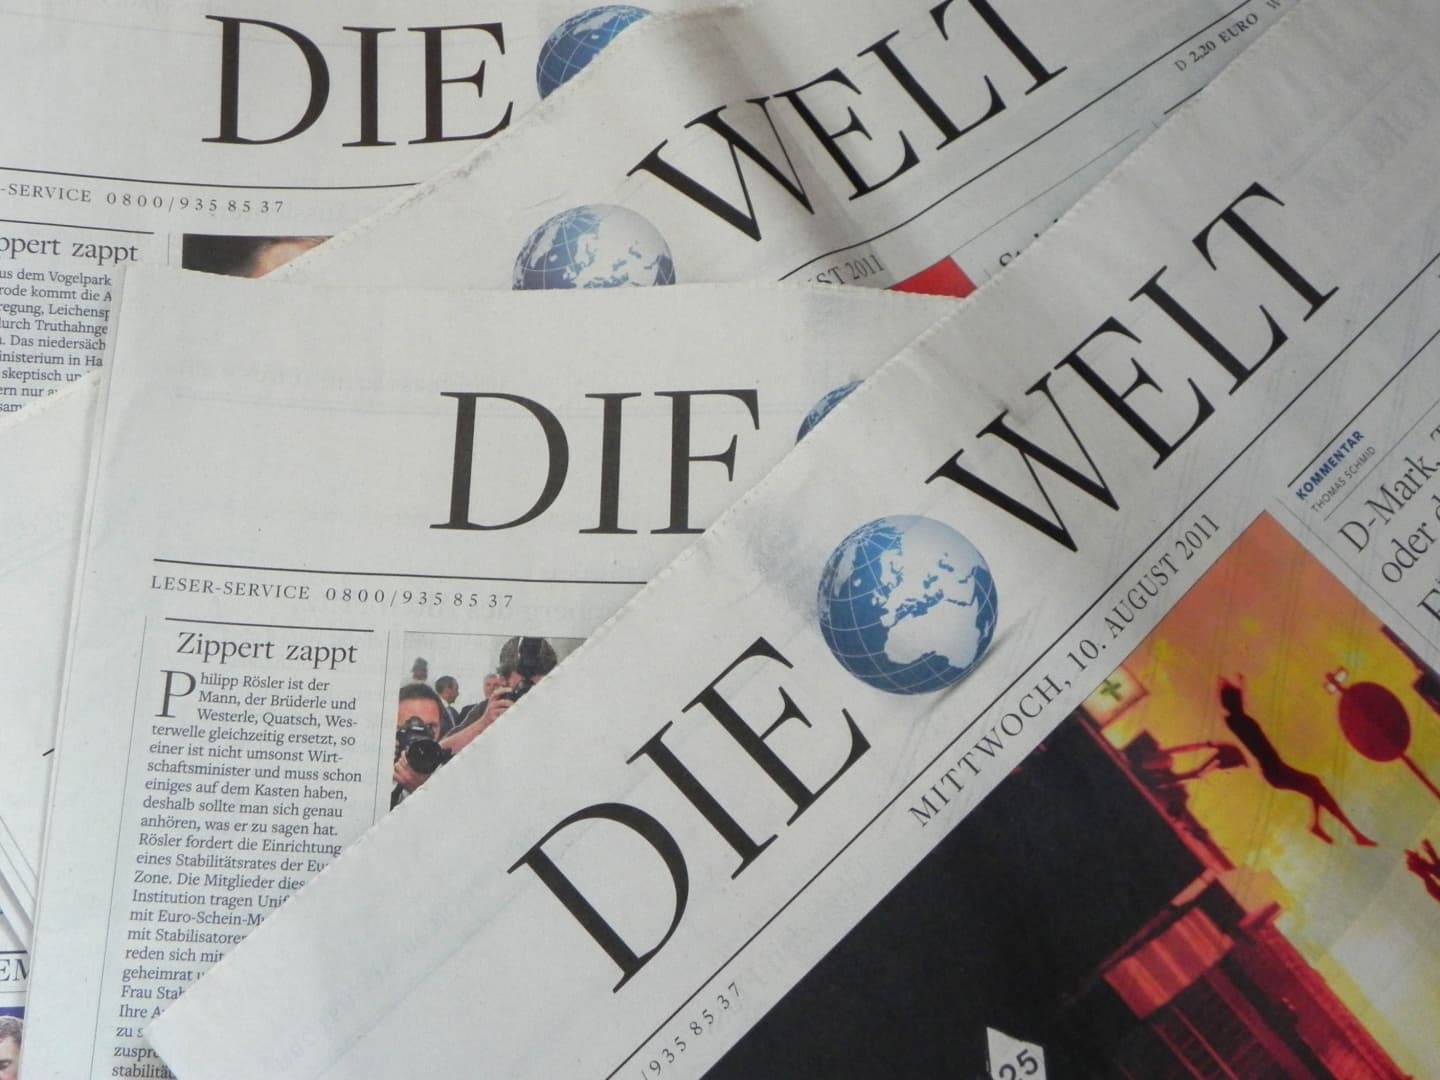 Törökország még mindig nem engedte szabadon a Die Welt tudósítóját